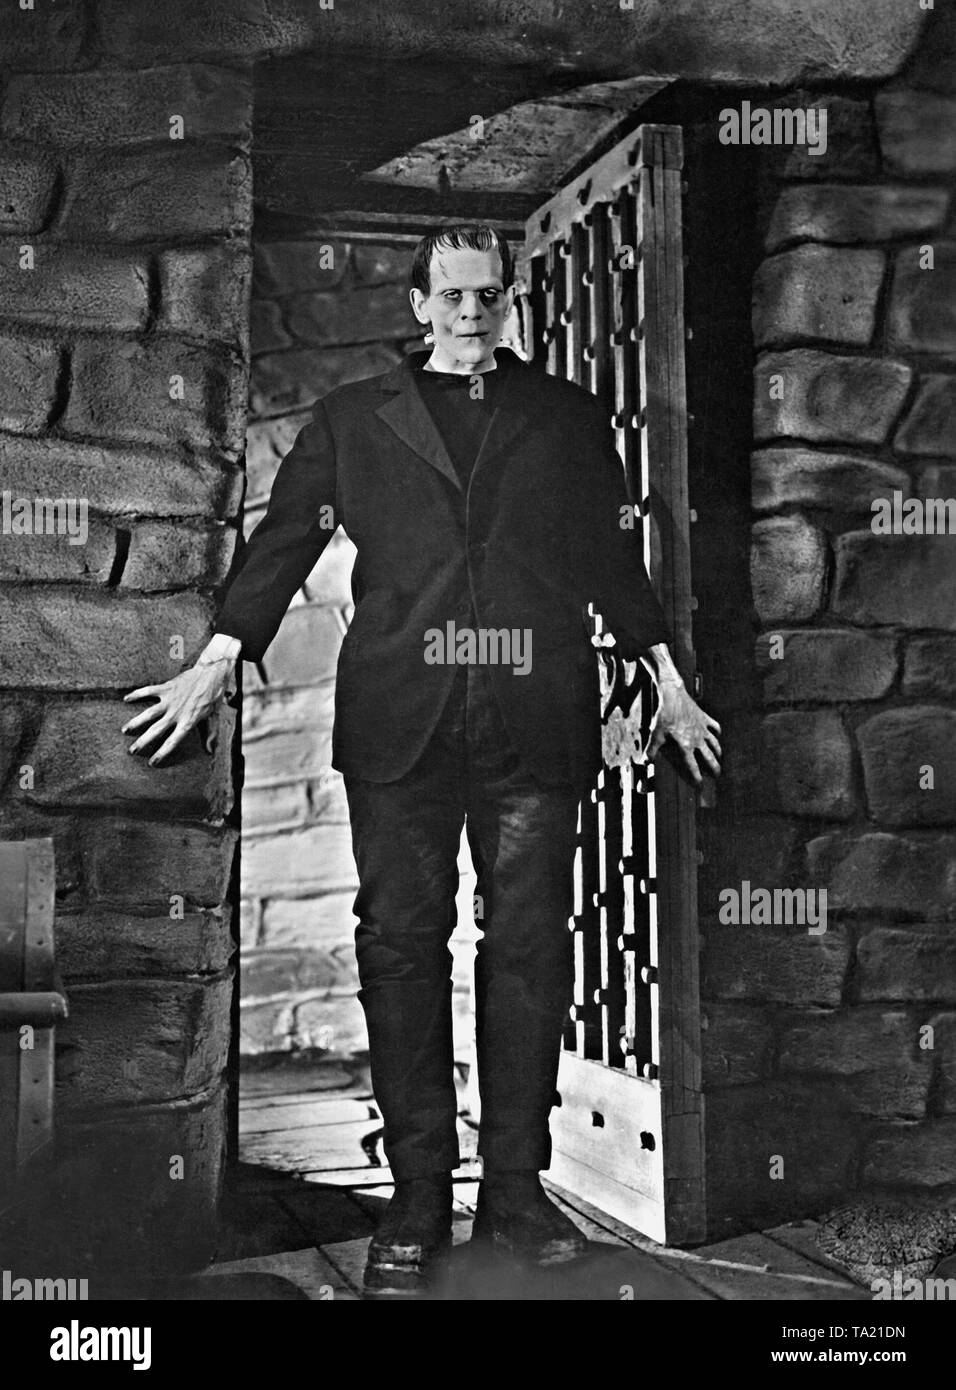 Boris Karloff come mostro nel film "Frankenstein", diretto da: James Whale, USA 1931. Foto Stock